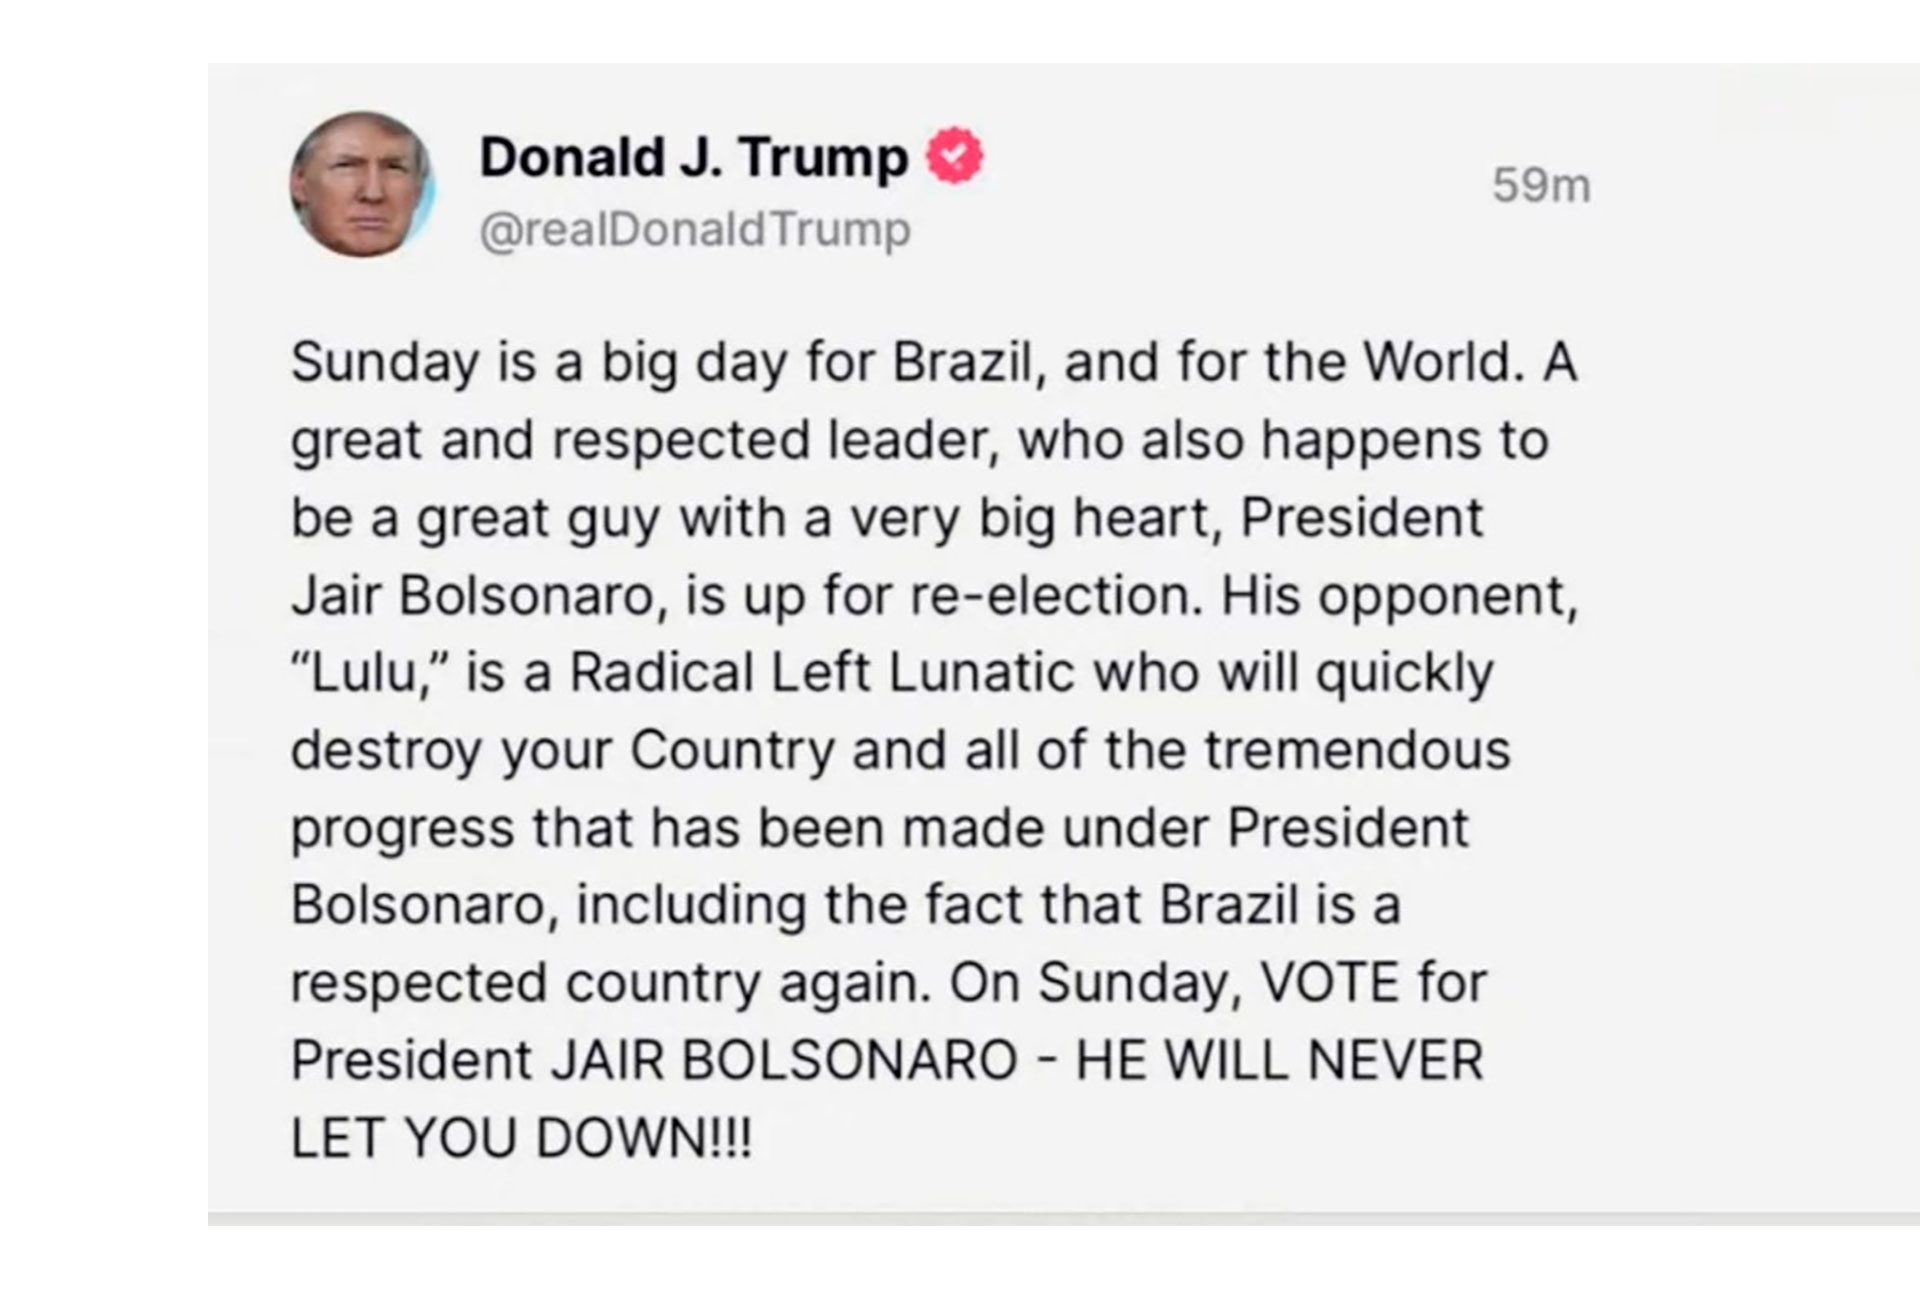 Trump's supportive comment on Bolsonaro